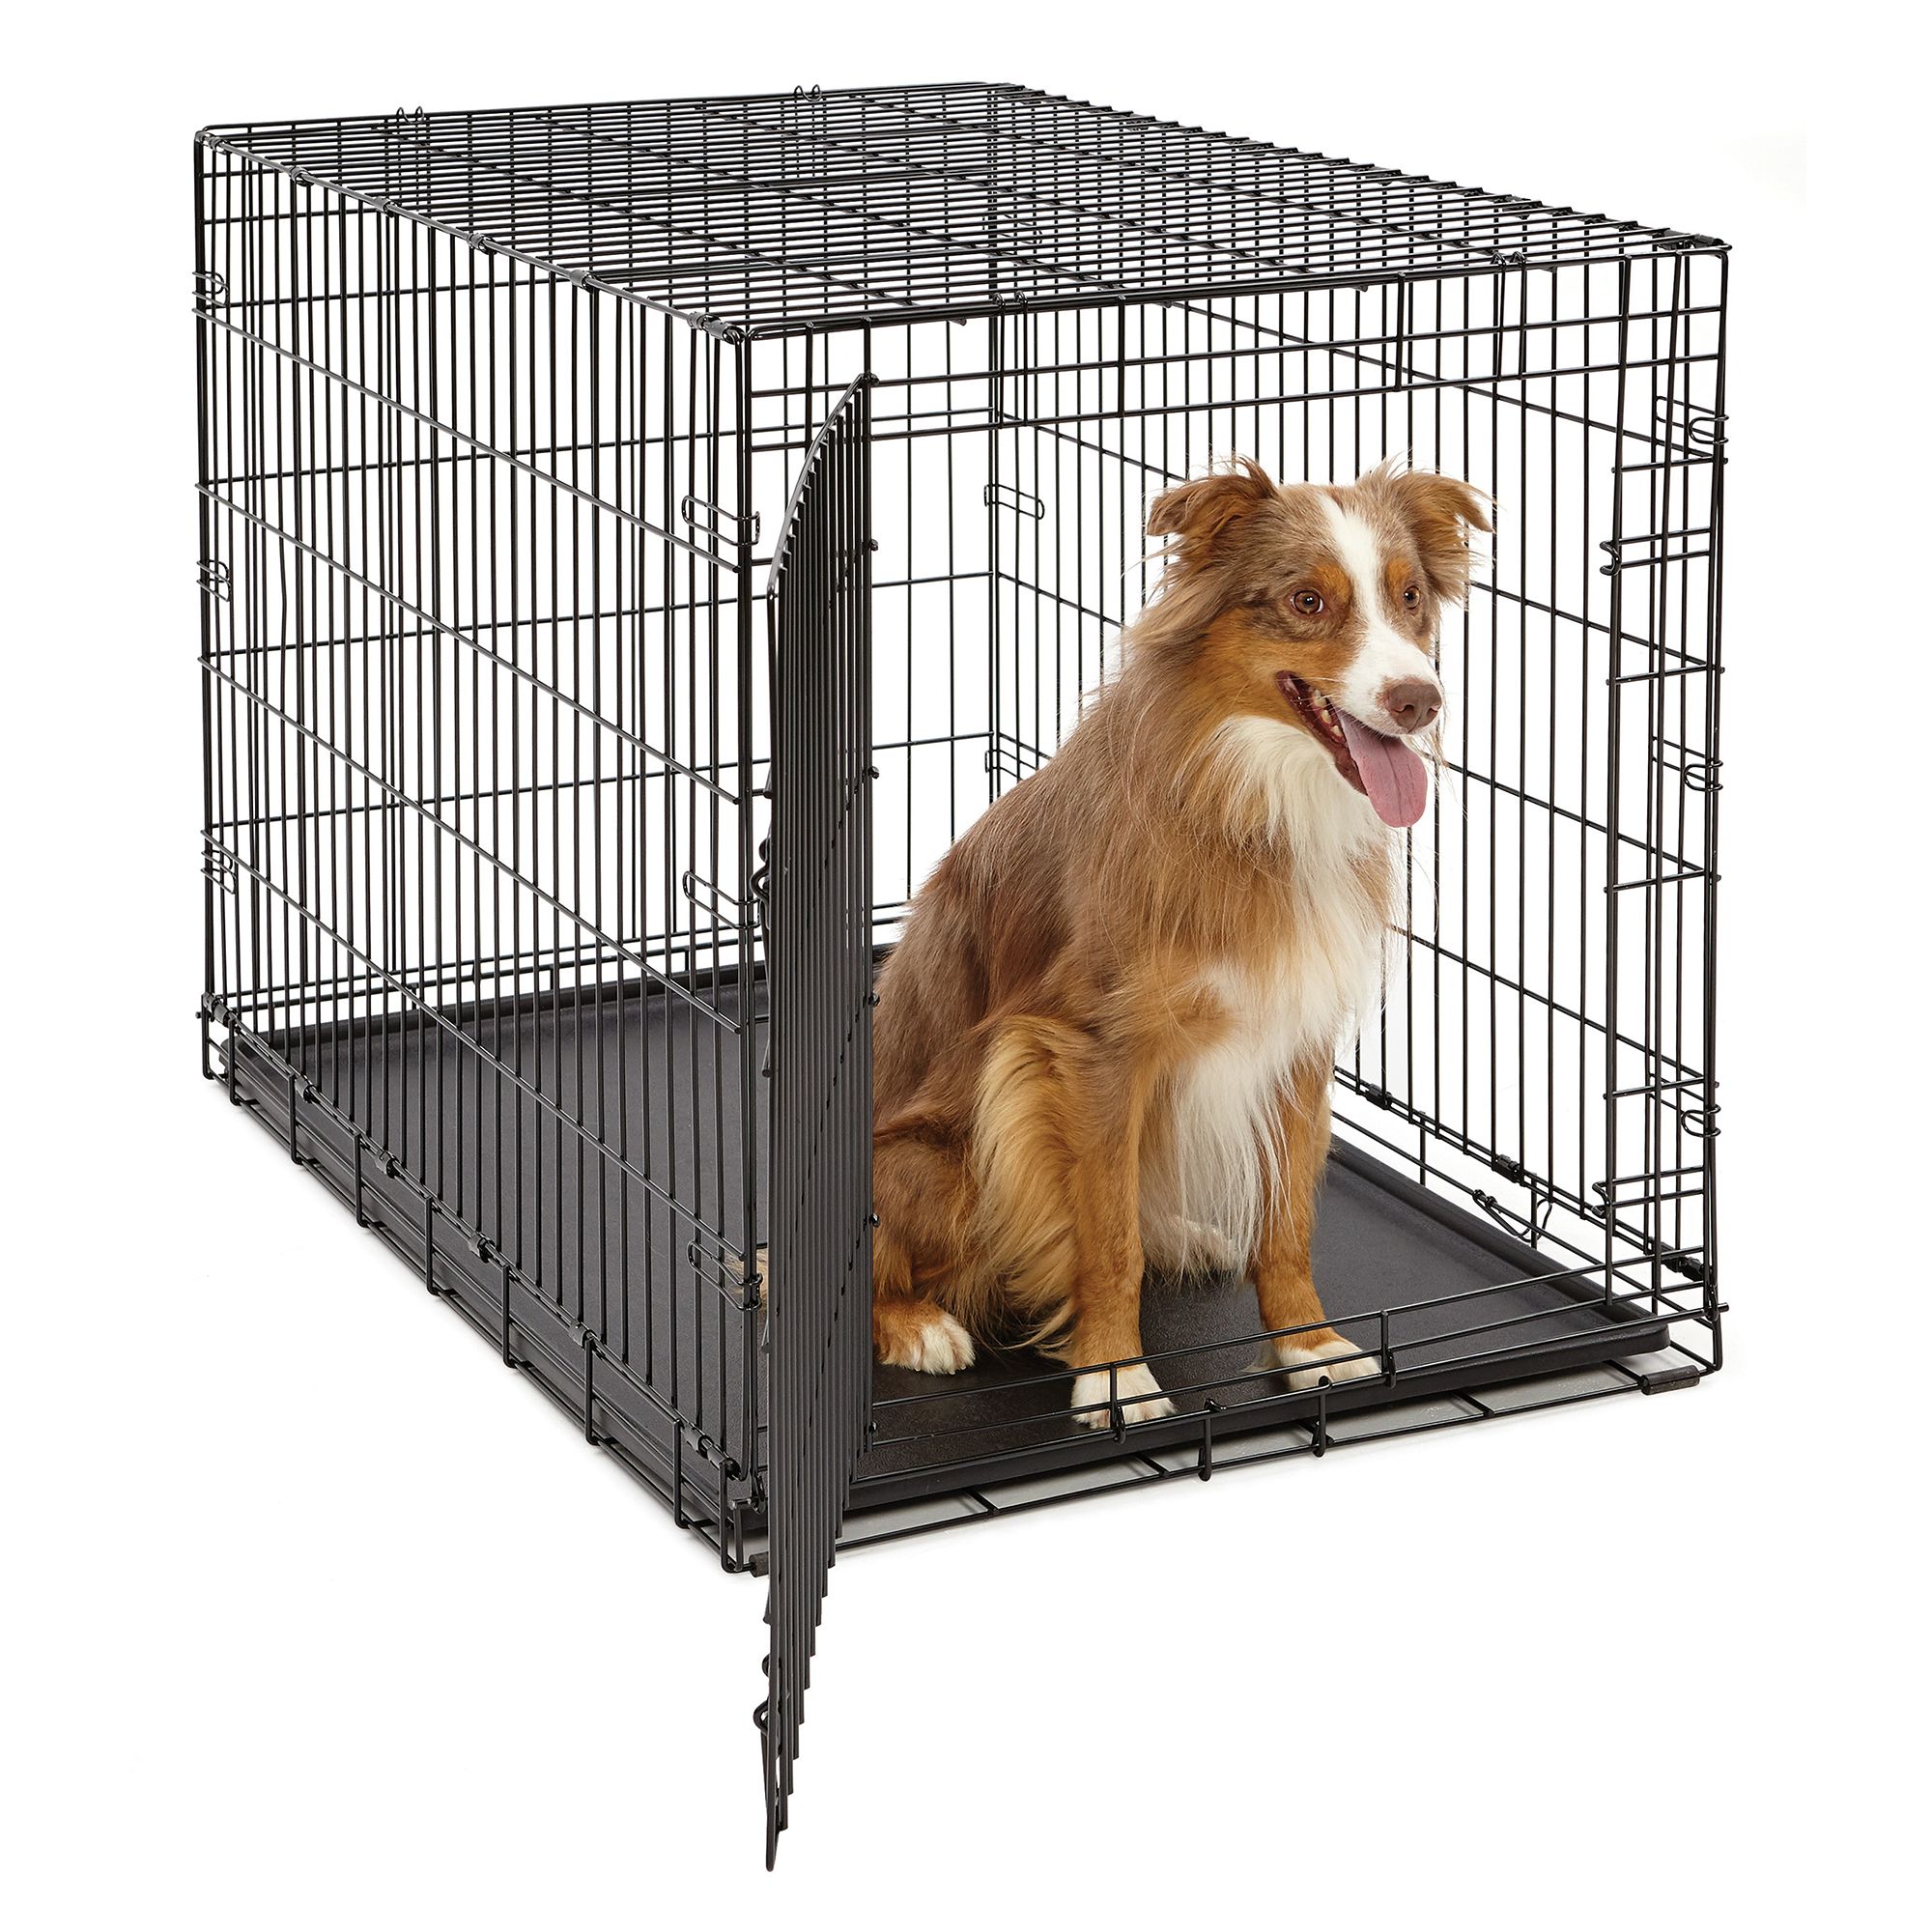 petsmart large dog crate